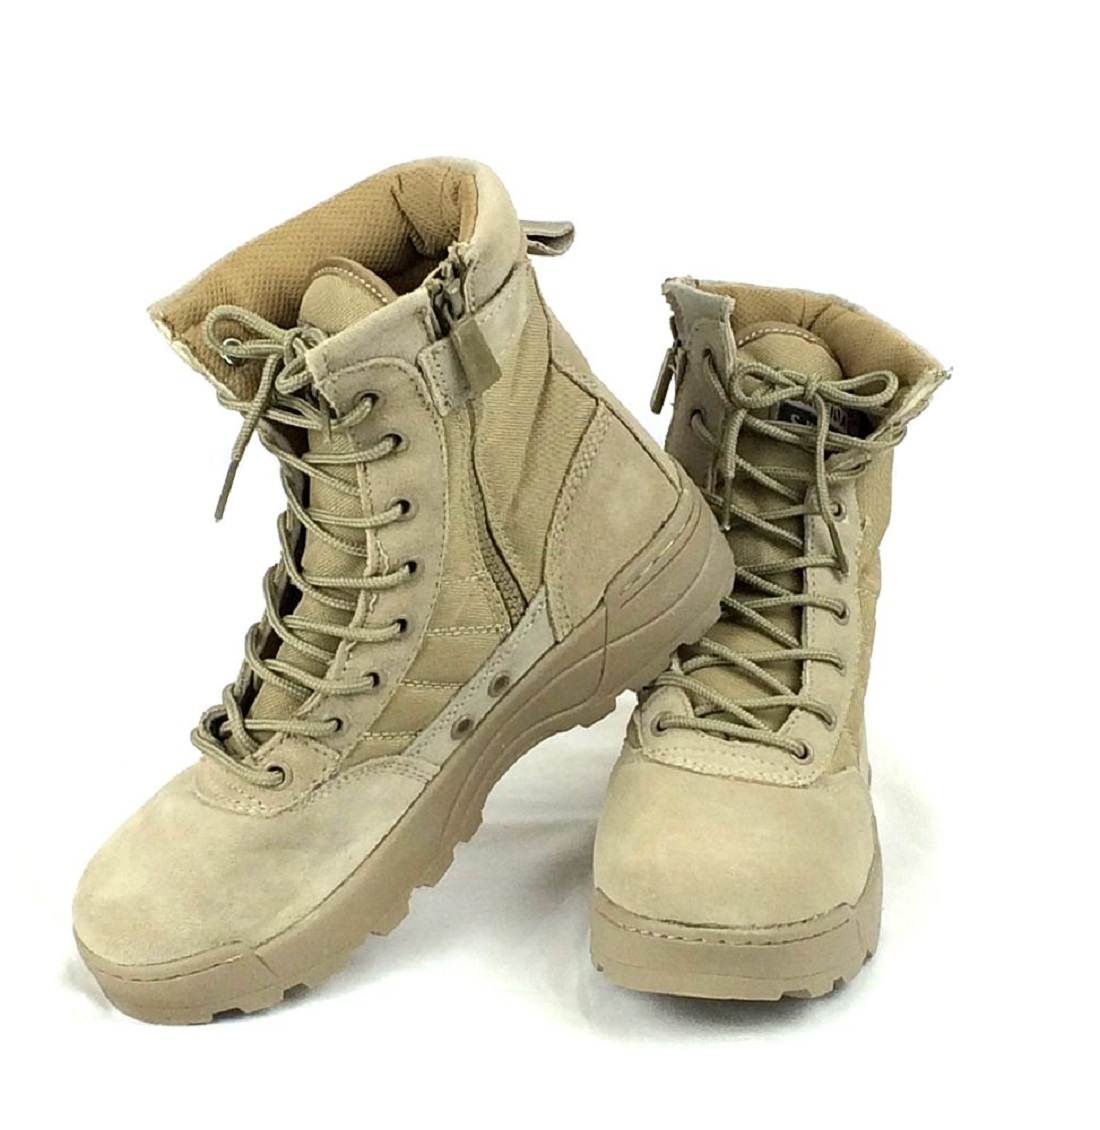 TAN27.5cm милитари ботинки Tacty karu ботинки combat ботинки rider ботинки рабочая обувь обувь боковой молния скумбиря ge мужской ботинки 